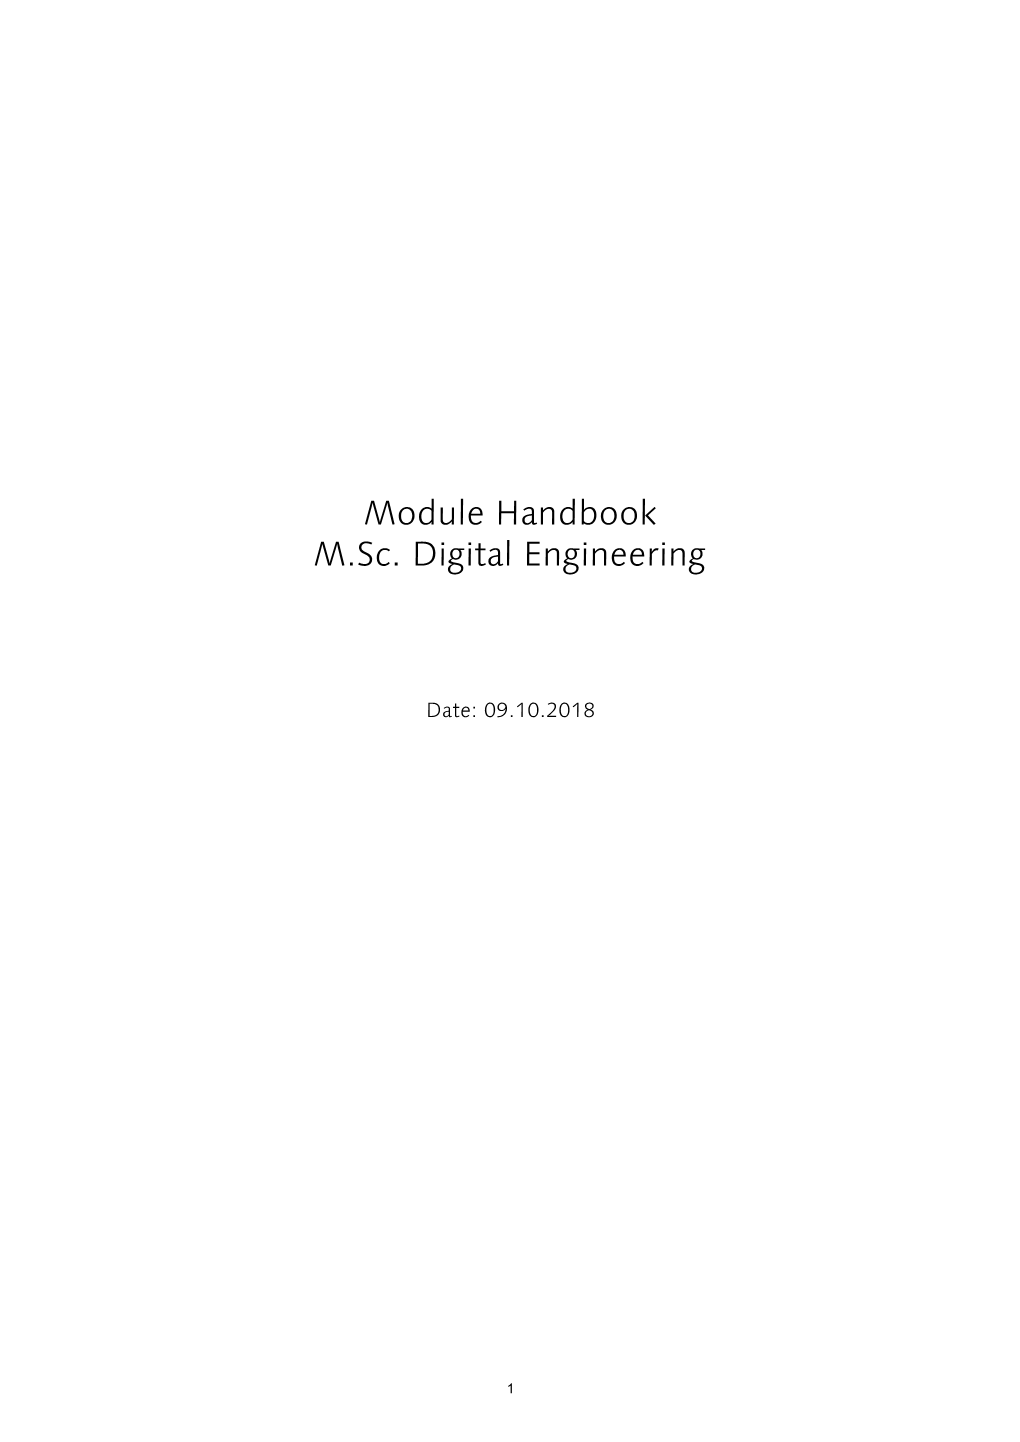 Module Handbook M.Sc. Digital Engineering